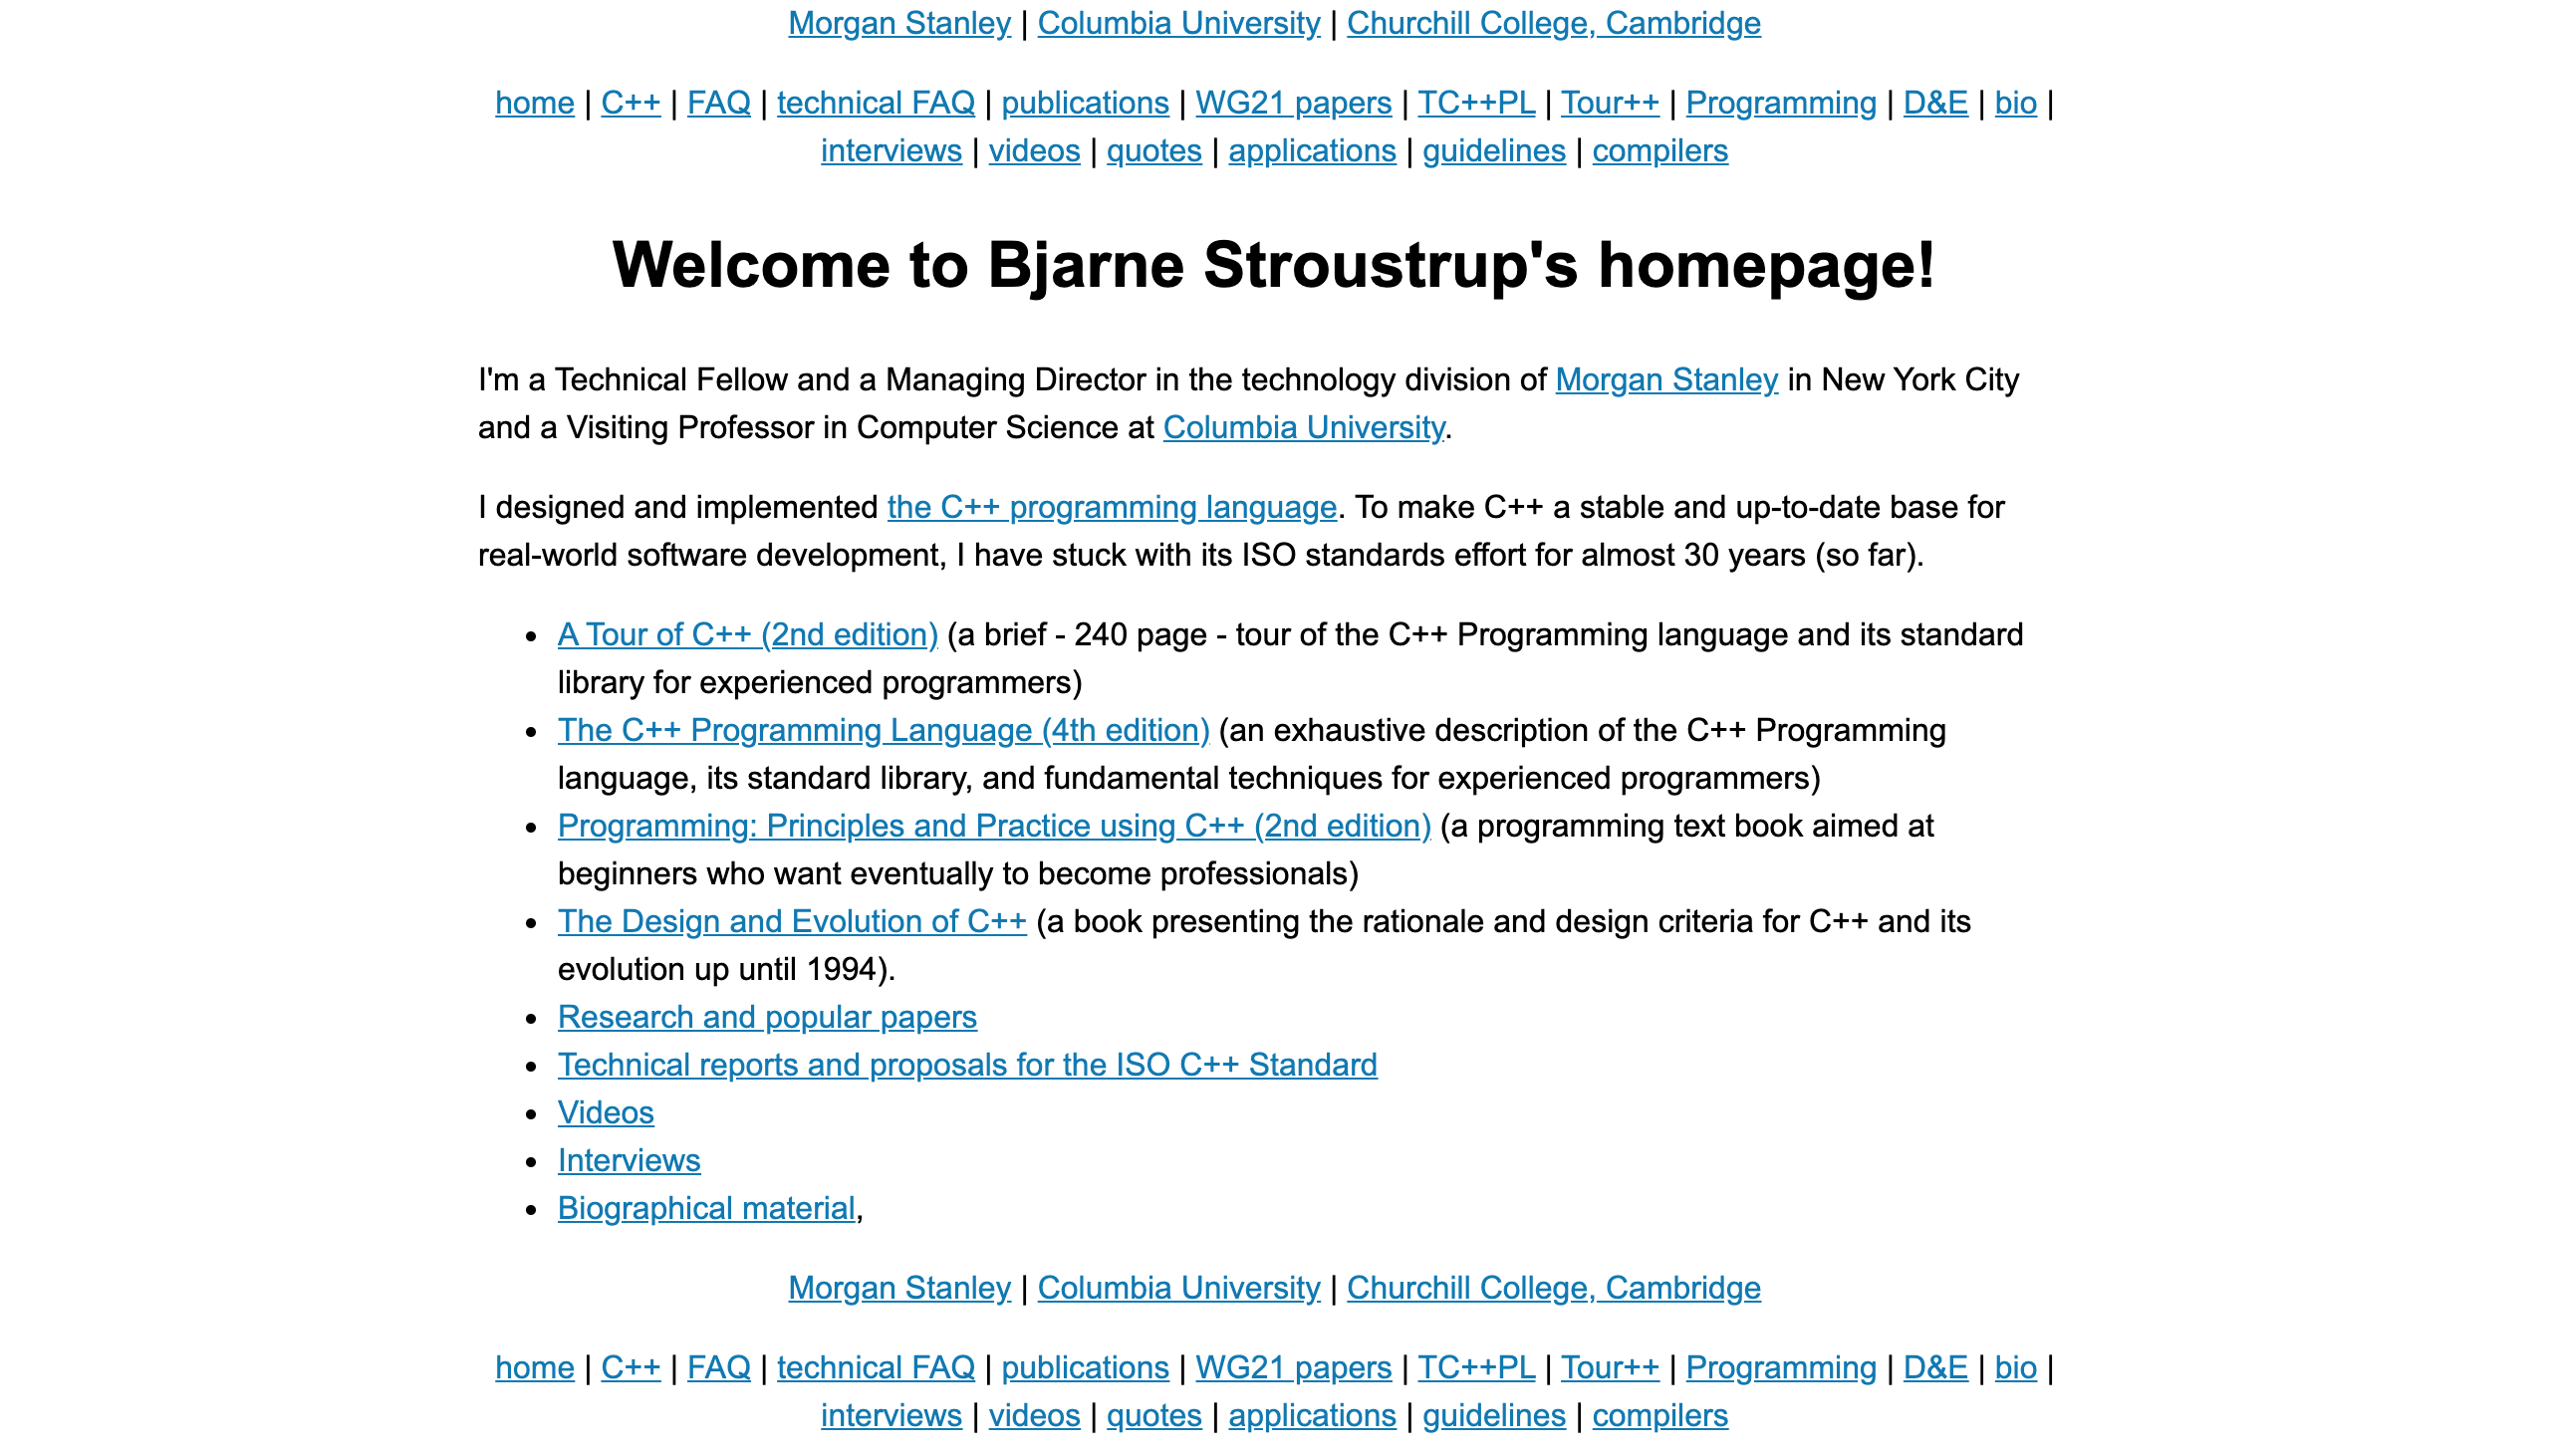 improved website of Bjarne Stroustrup